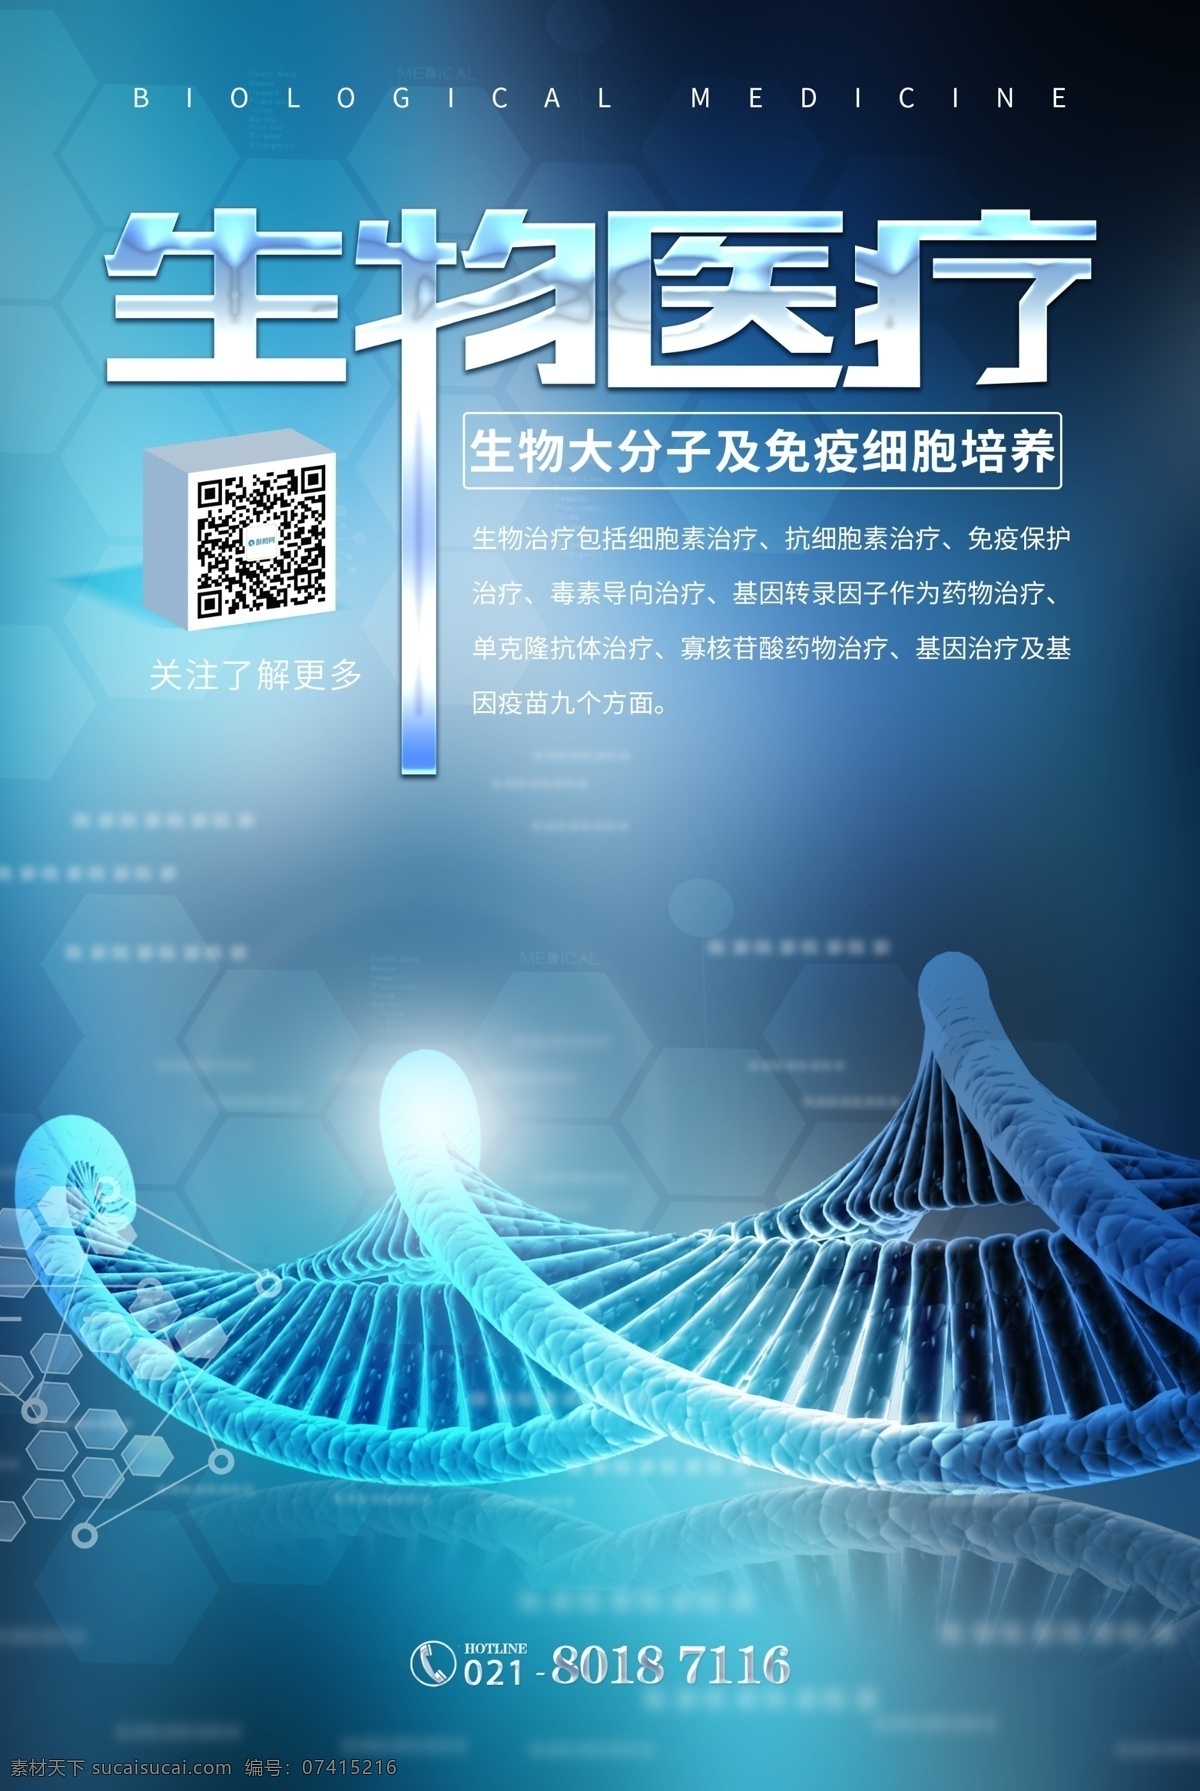 生物医疗海报 生物 医疗海报 基因 医学 生物医学 生物科技 医疗生物 基因研究 医疗技术 医疗 细胞 海报 互联网医疗